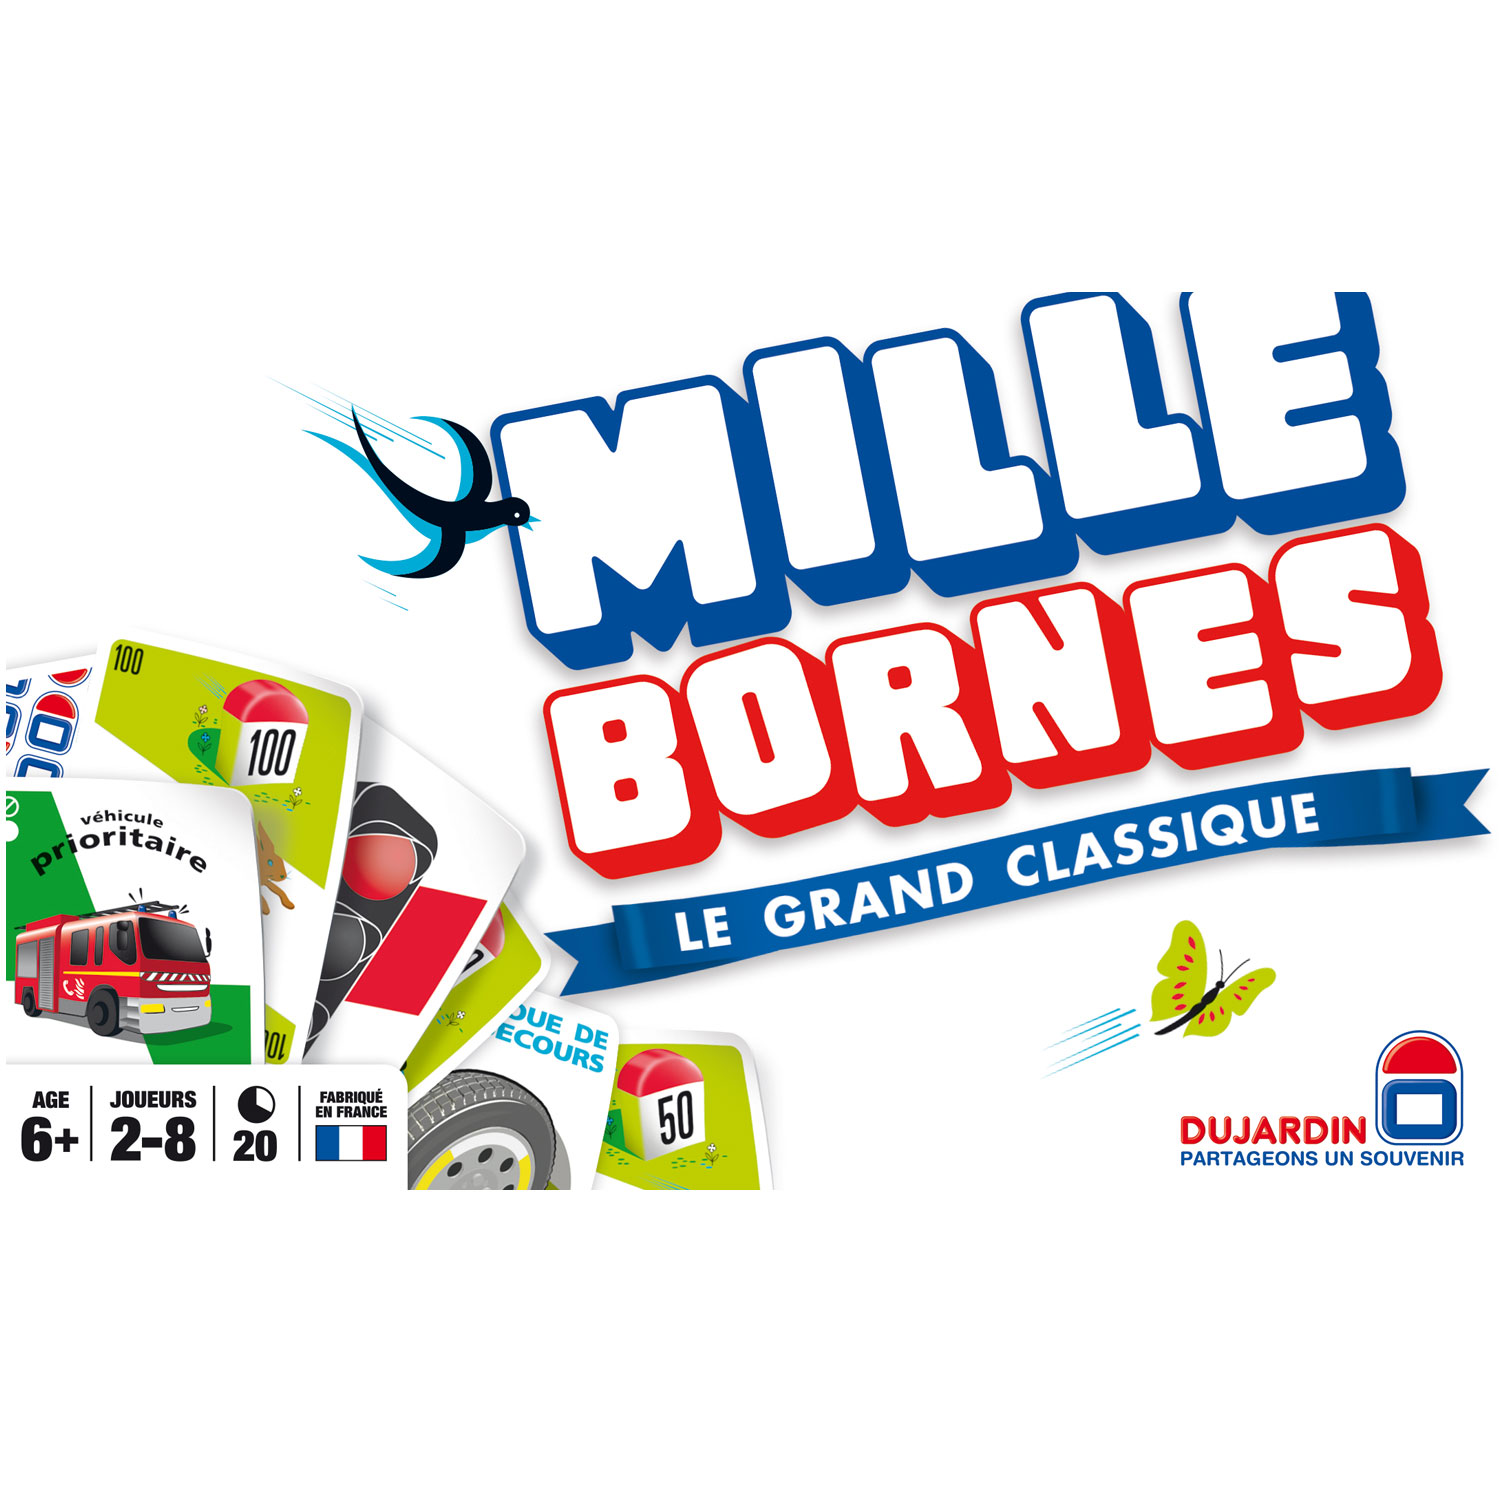 Mille Bornes - Format sans plateau - Le Grand Classique